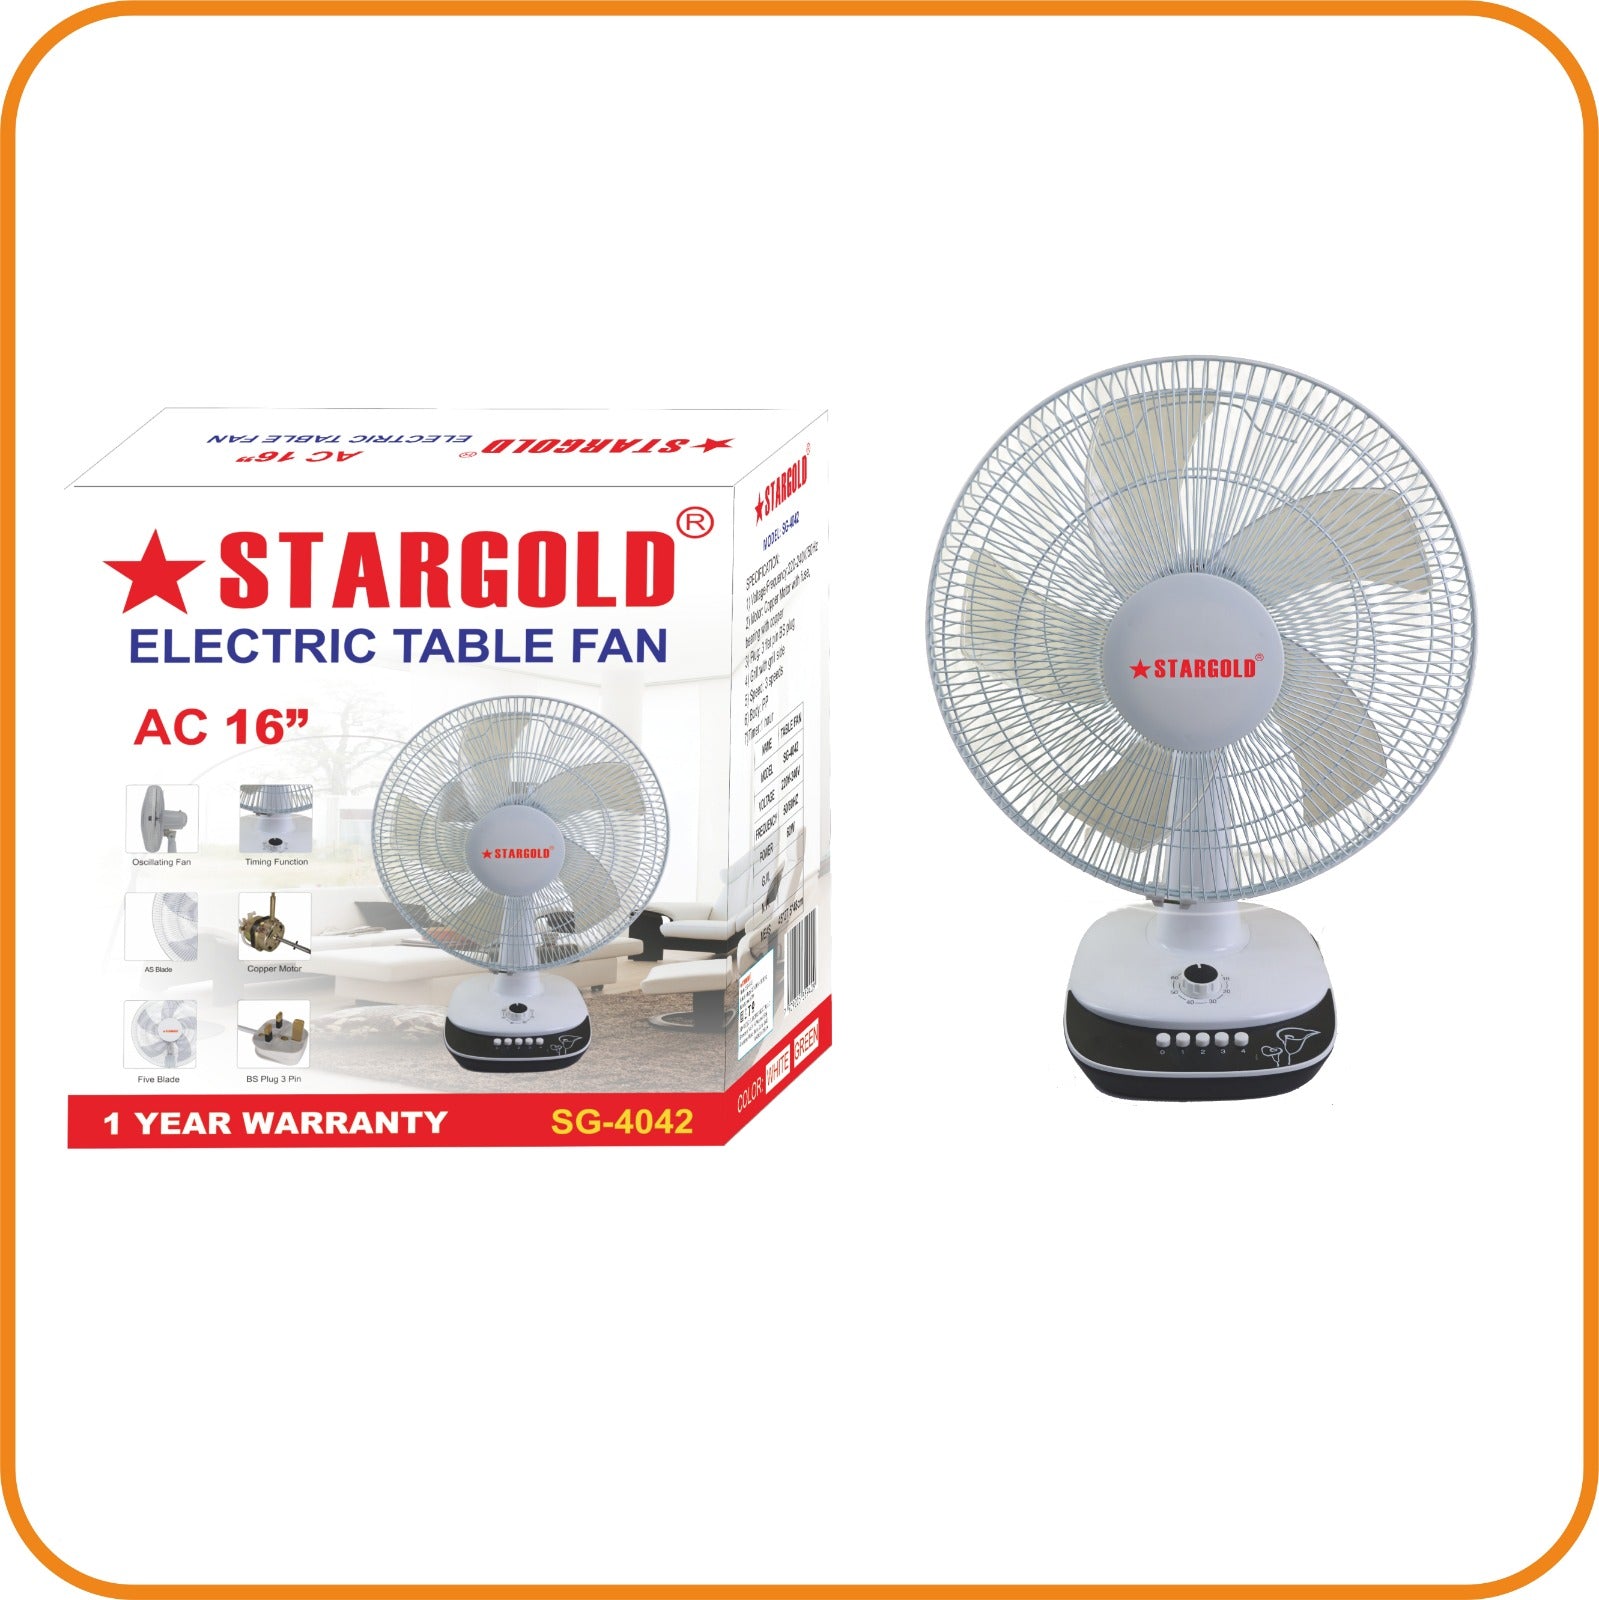 StarGold Electric Table Fan AC 16